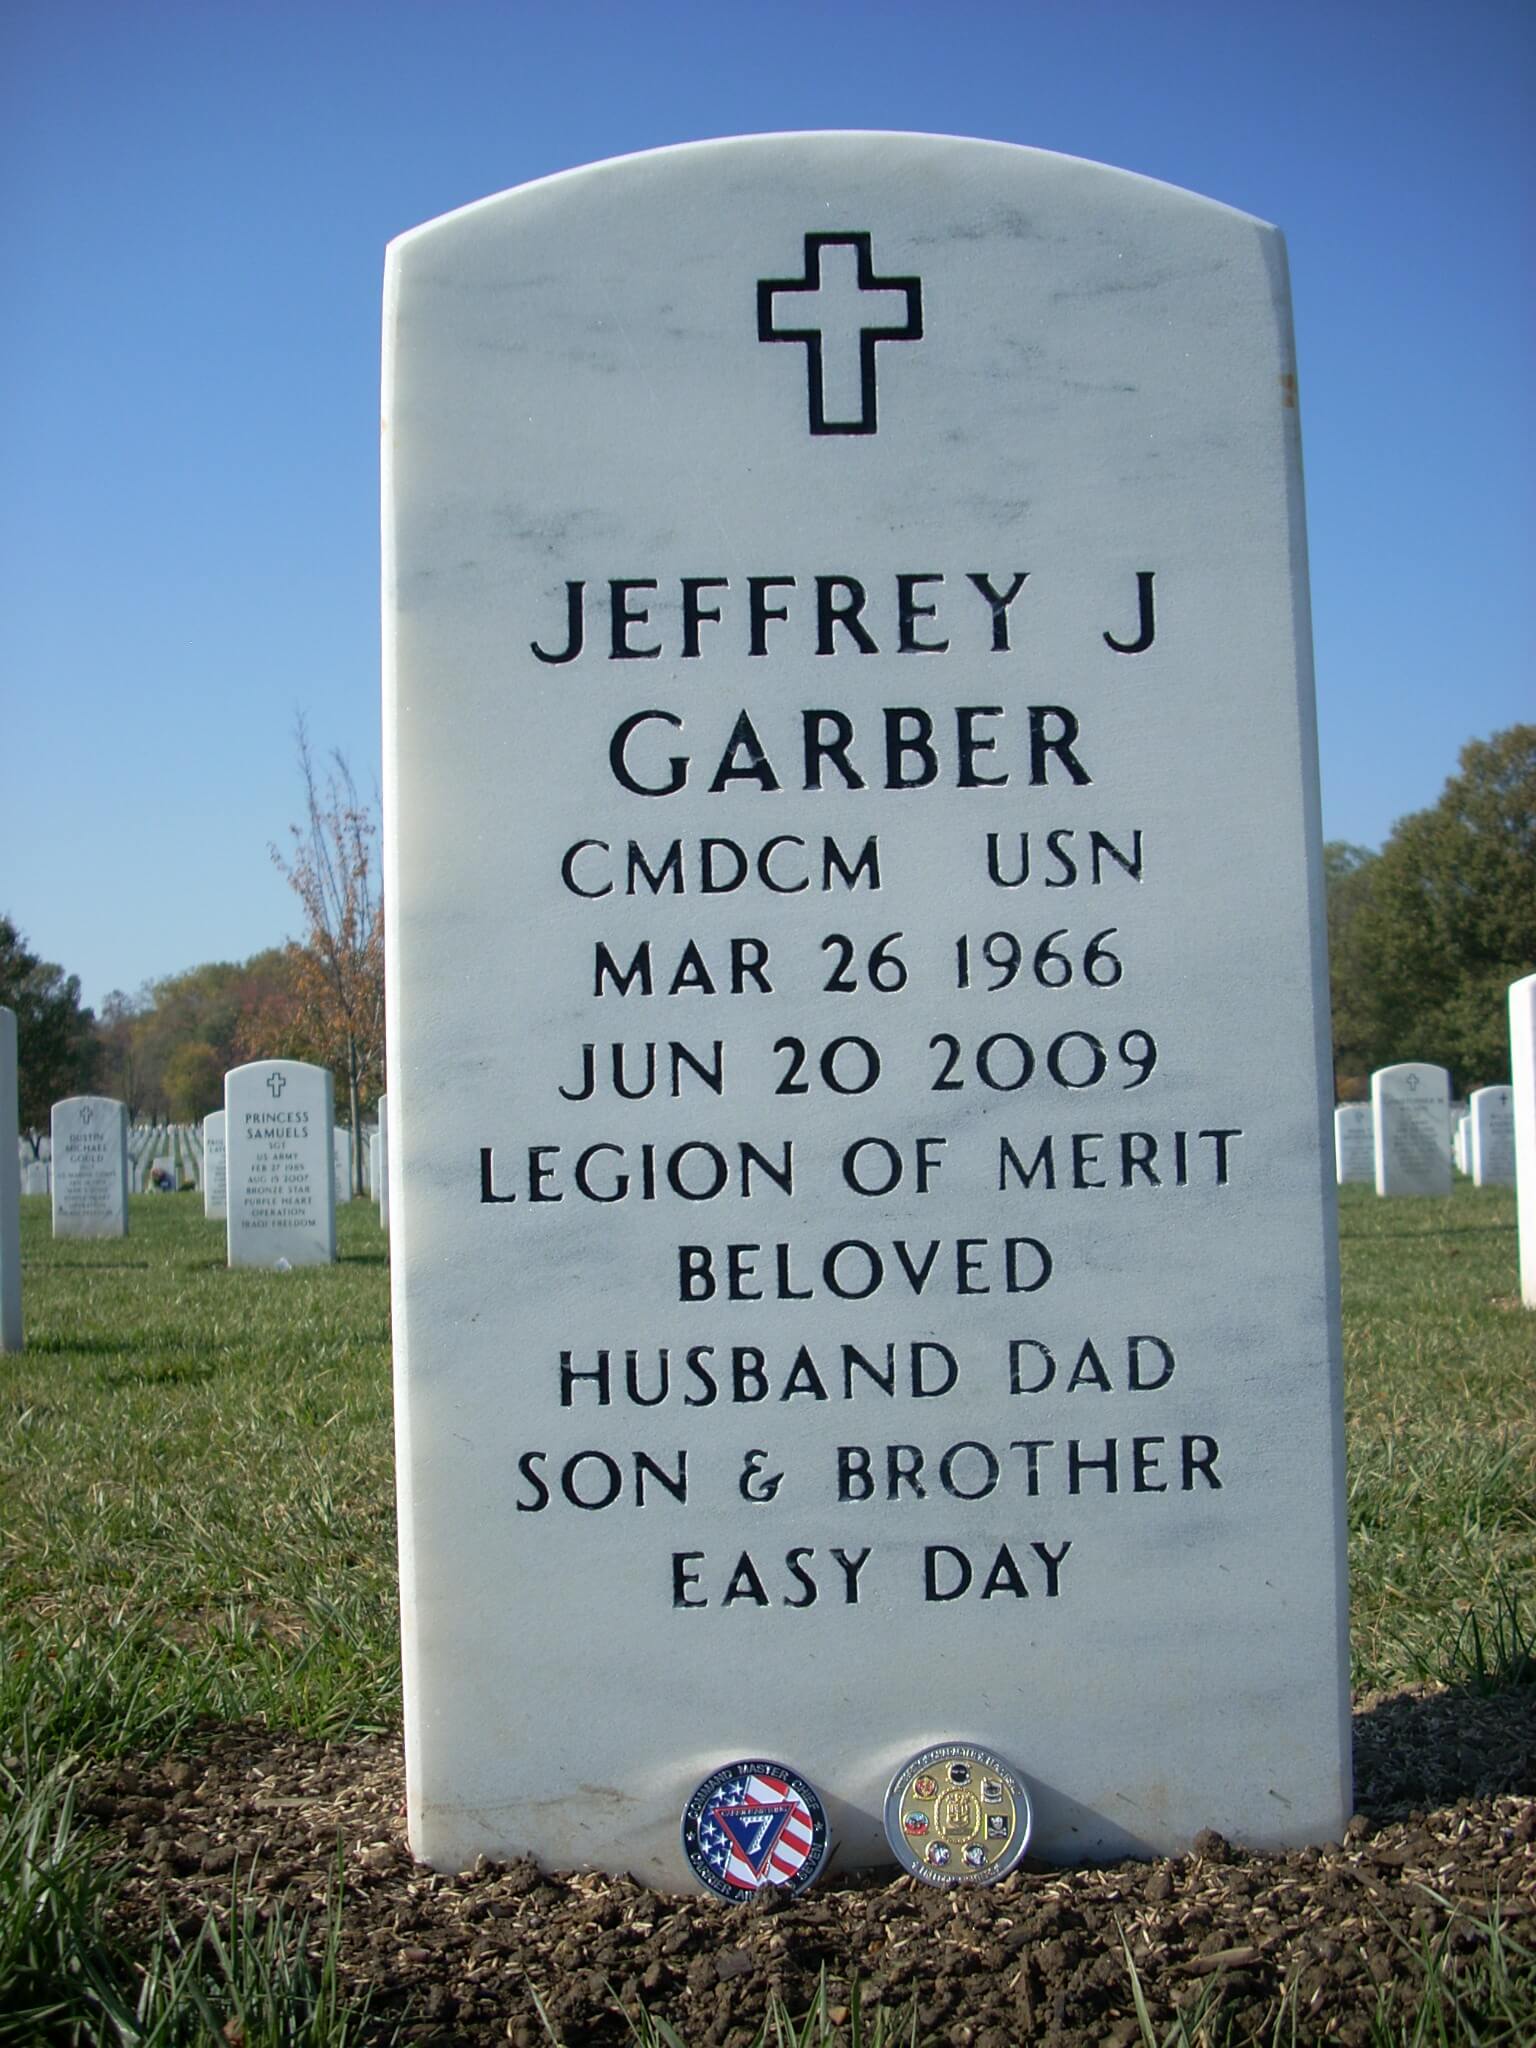 jjgarber-gravesite-photo-by-holly-july-2011-003